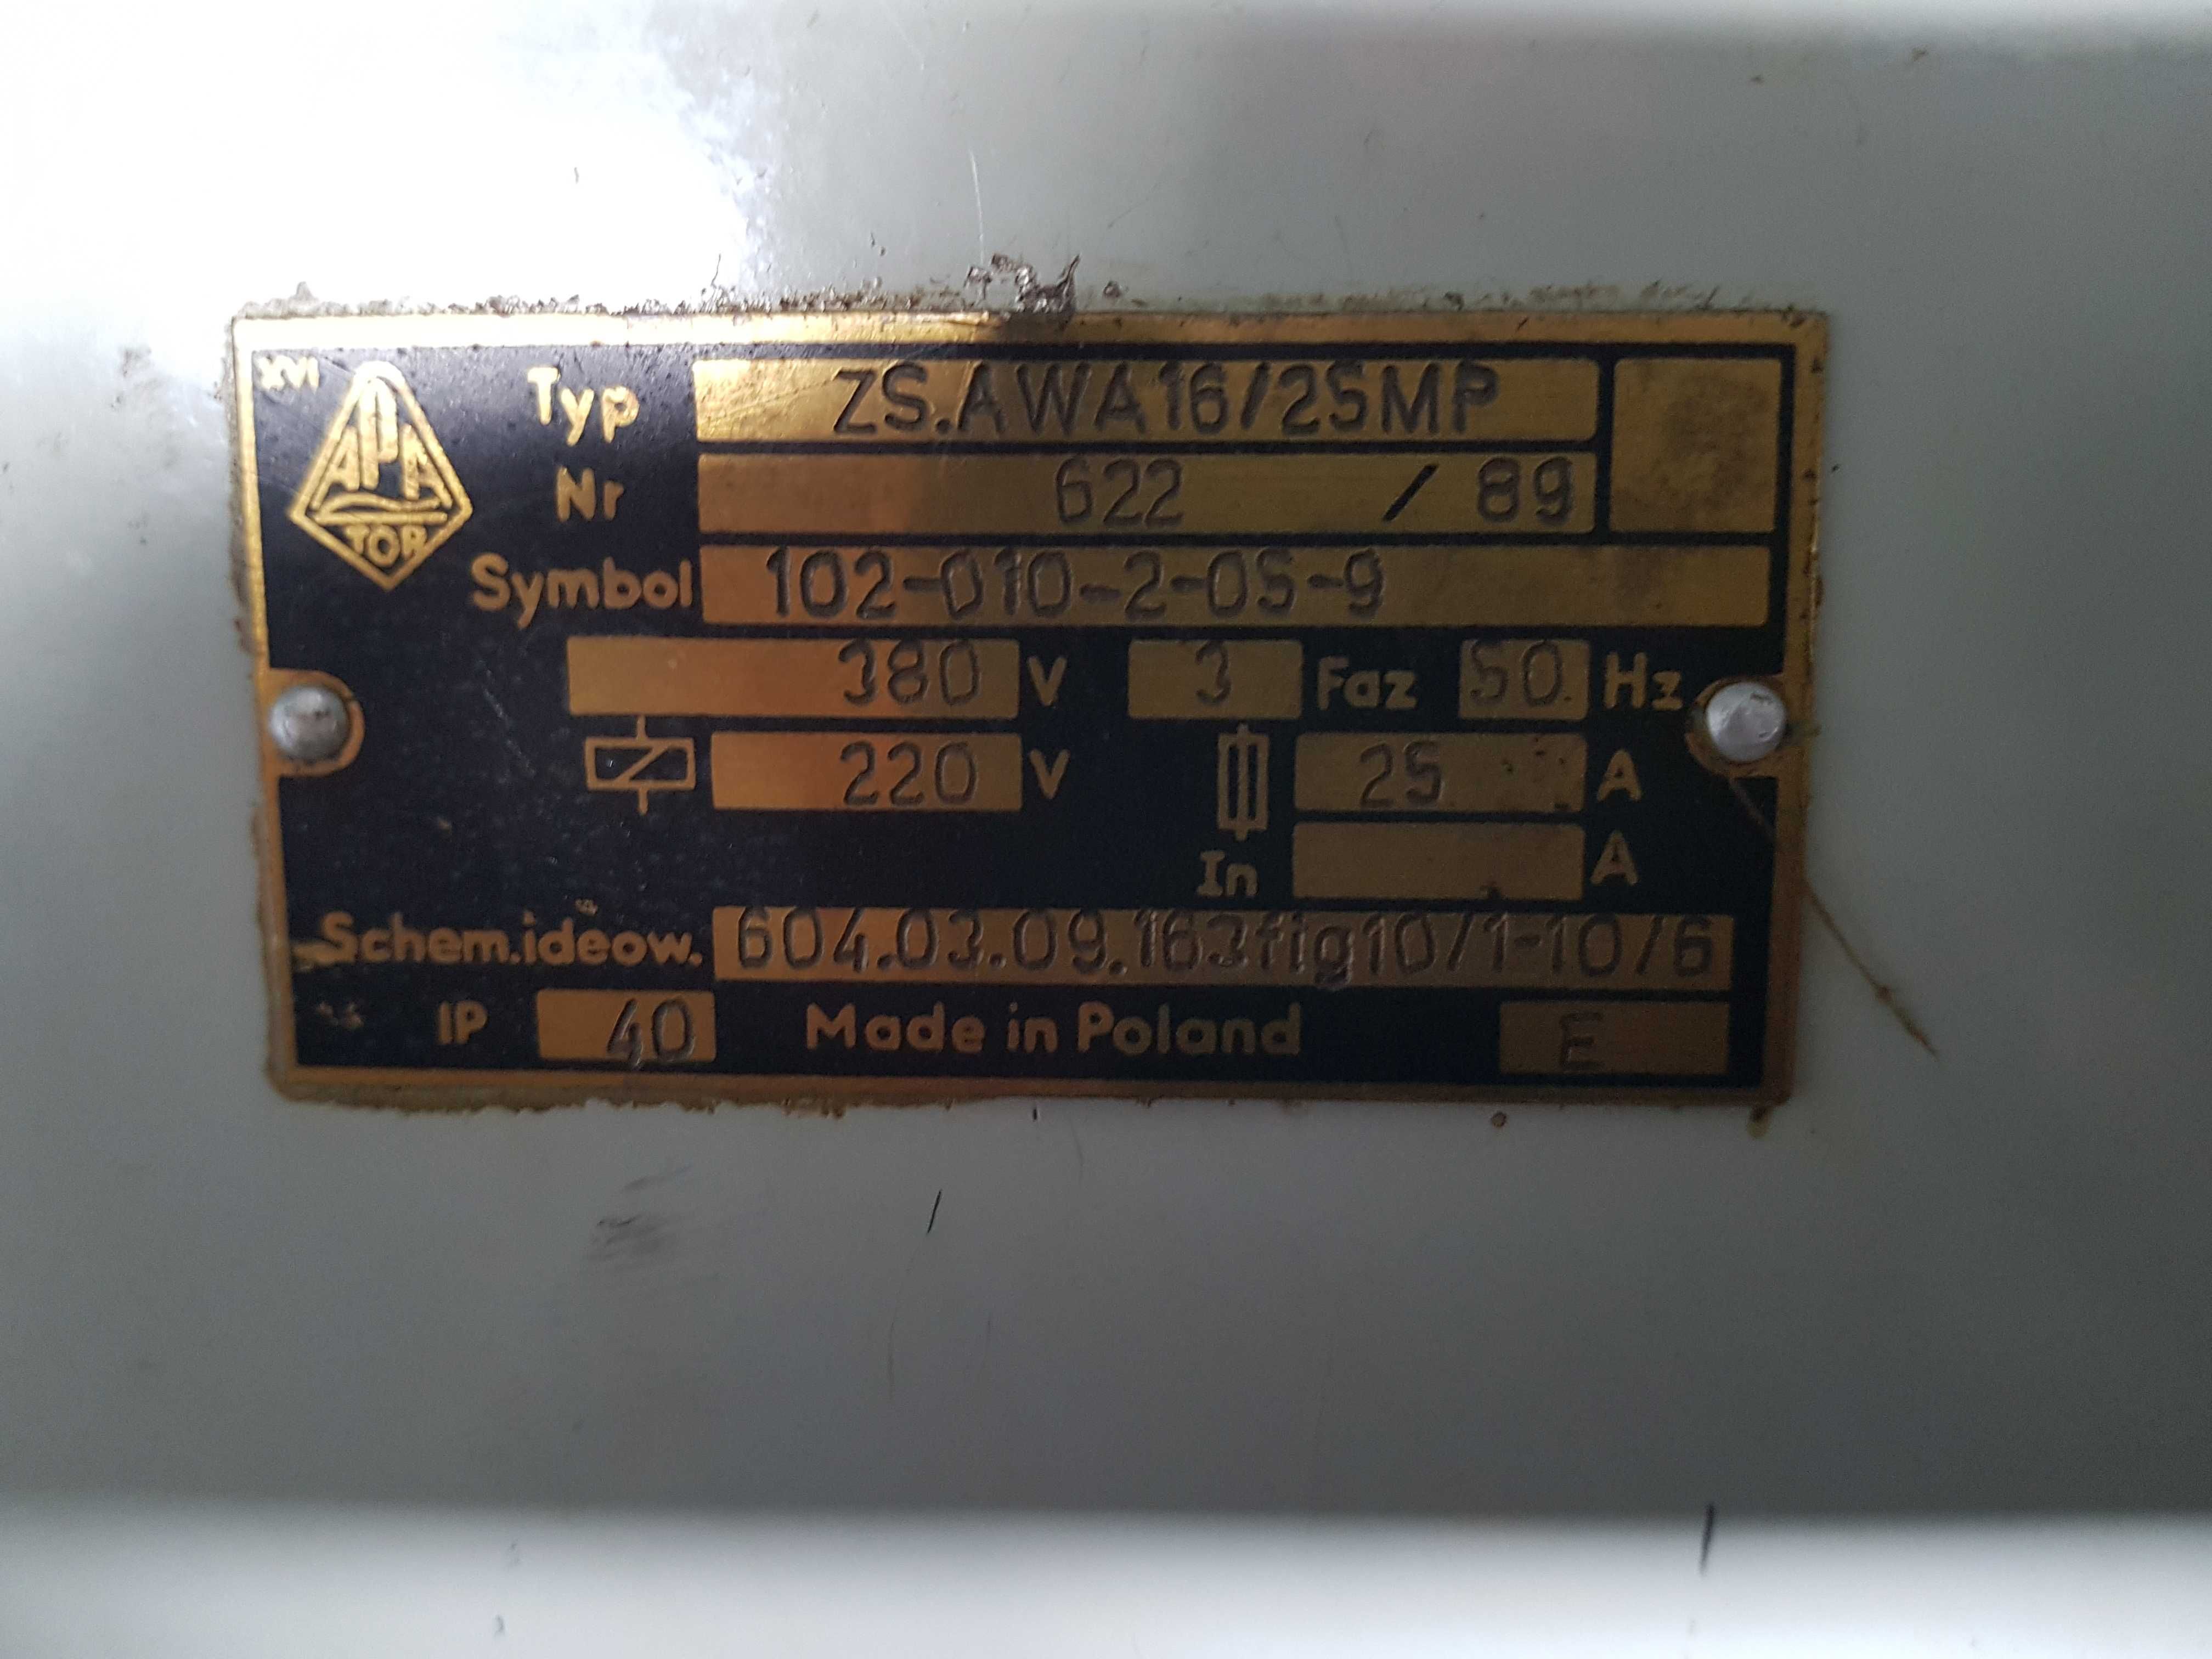 Automat tokarski do metalu (wzdłużny) z podajnikiem AWA 16/25 MP